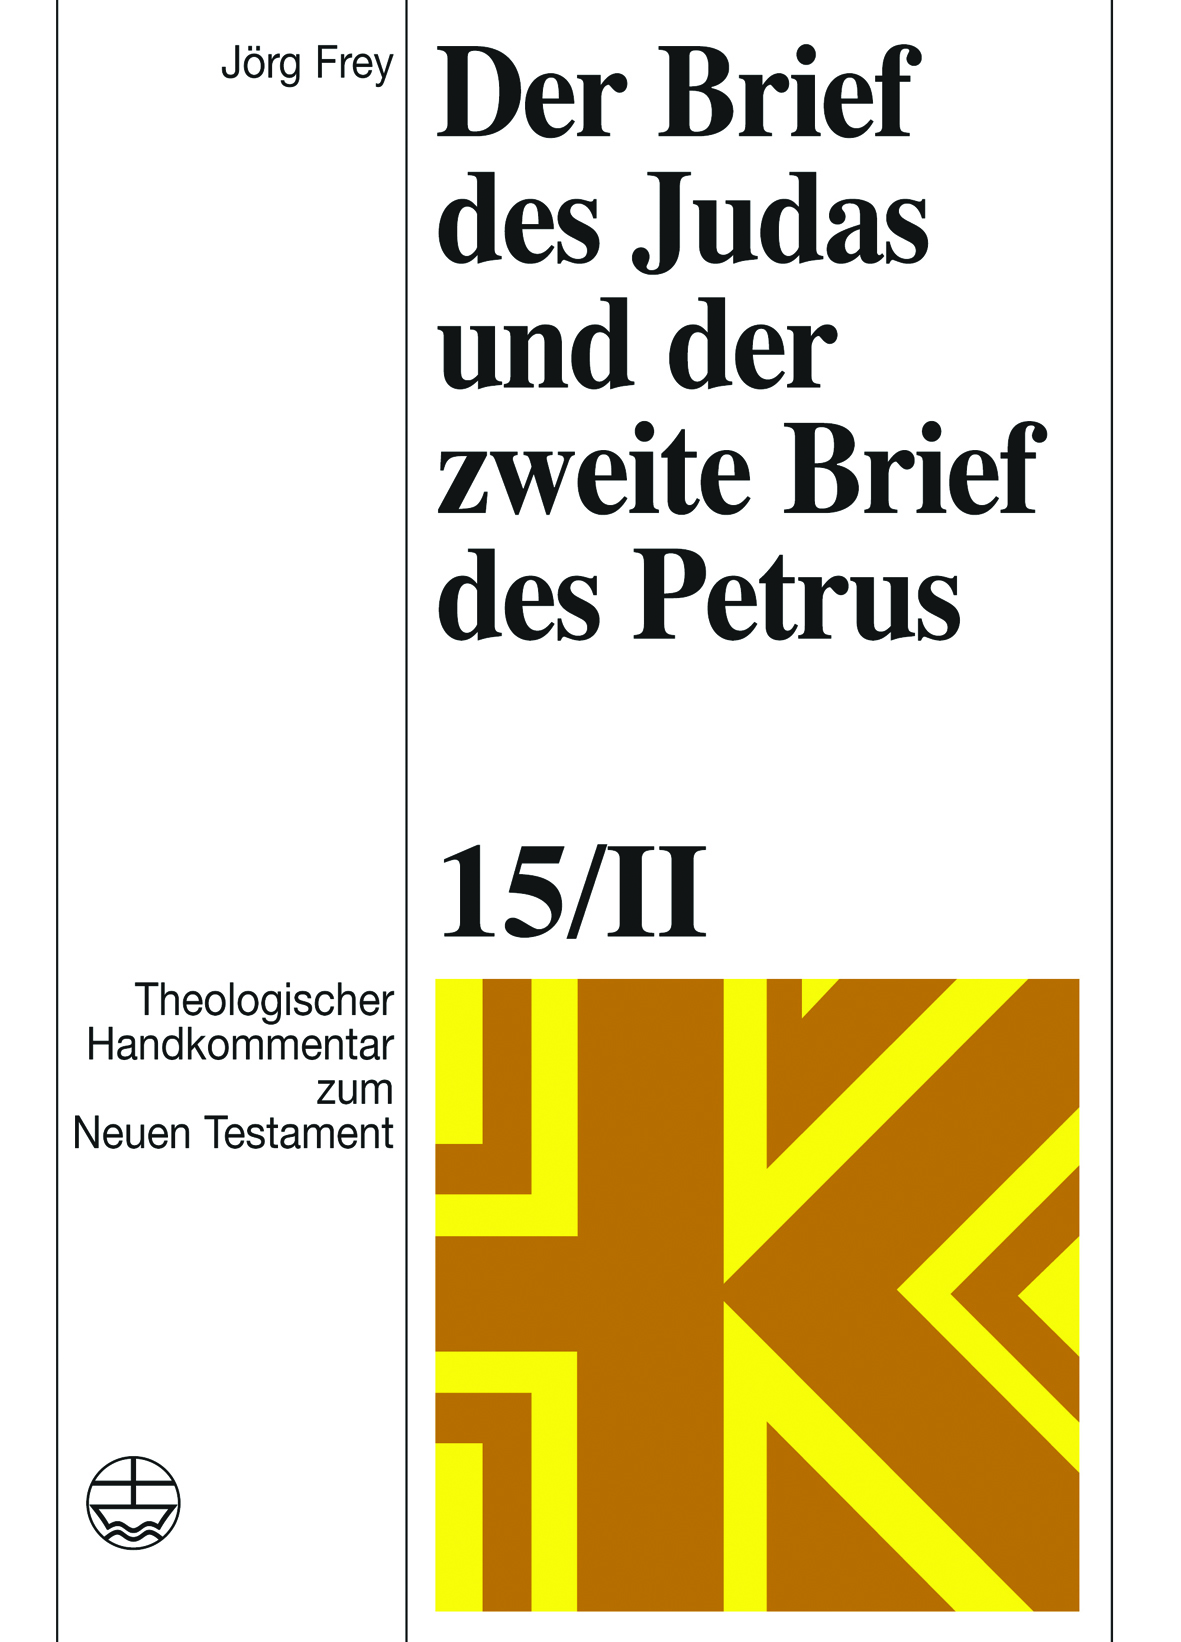 Der Brief des Judas und der zweite Brief des Petrus (ThHK Bd. 15/II) im Abo - Cover